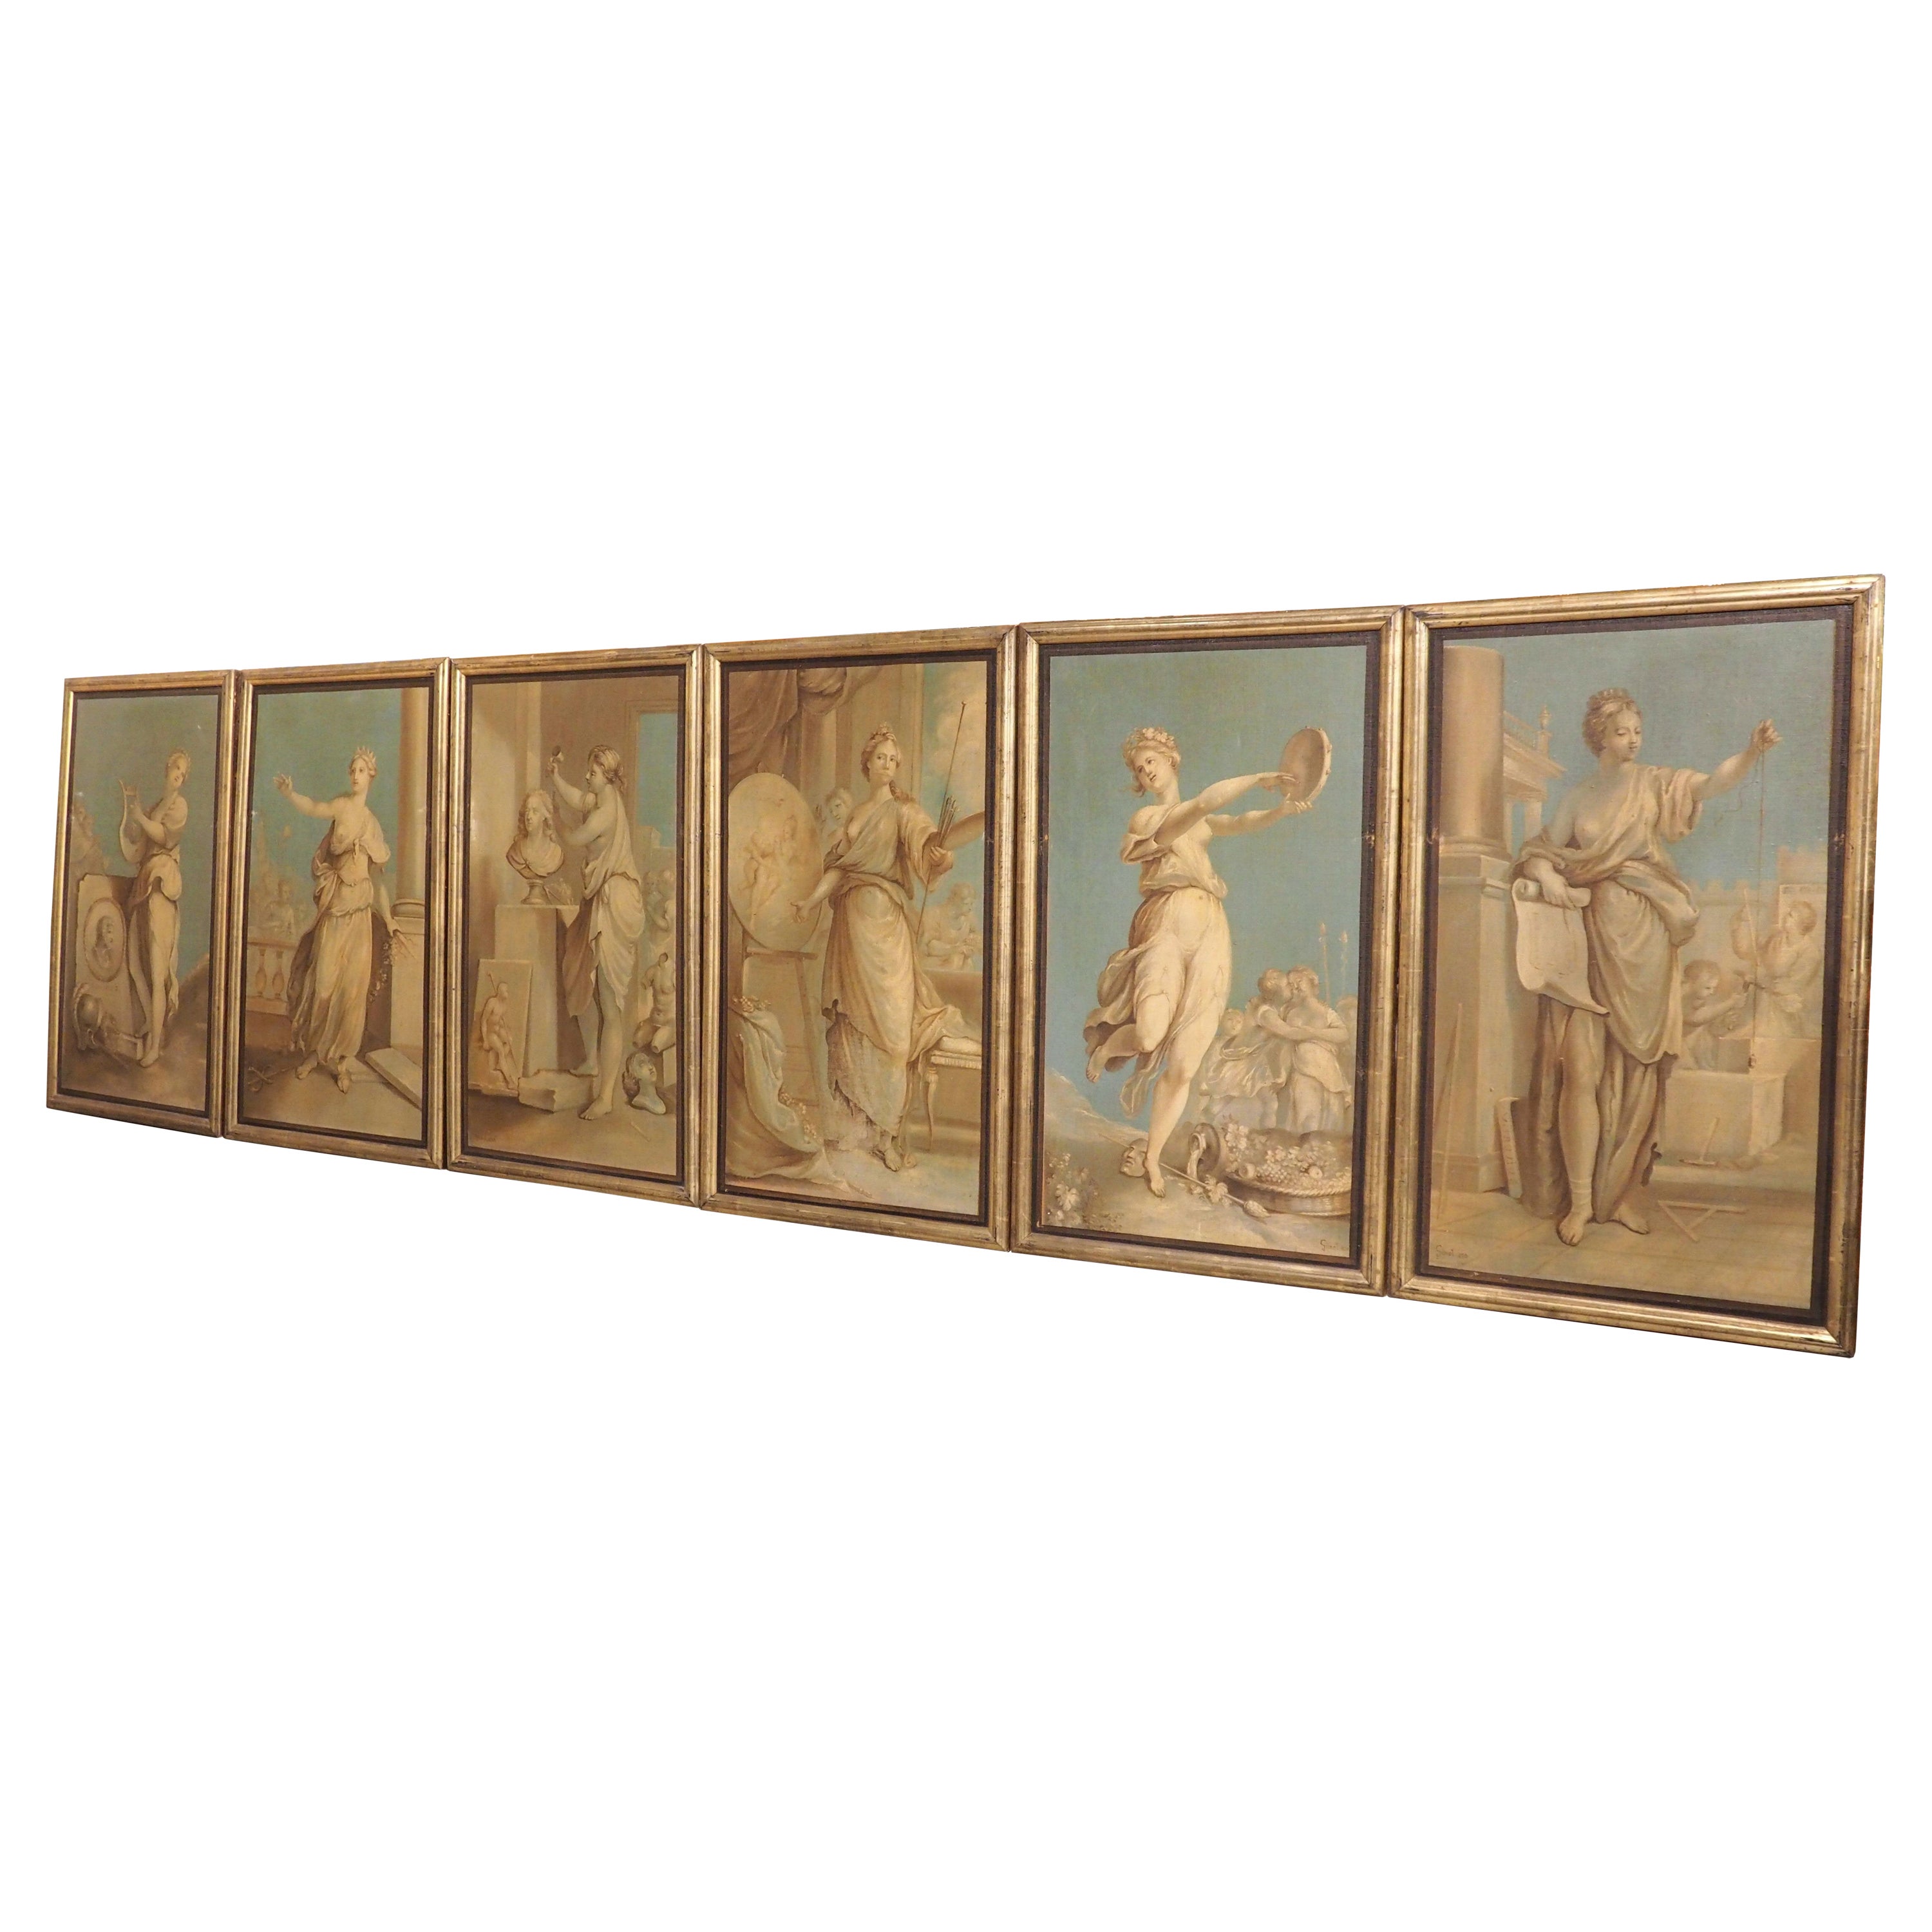 Ensemble de six peintures néoclassiques à l'huile sur toile, datées de 1830